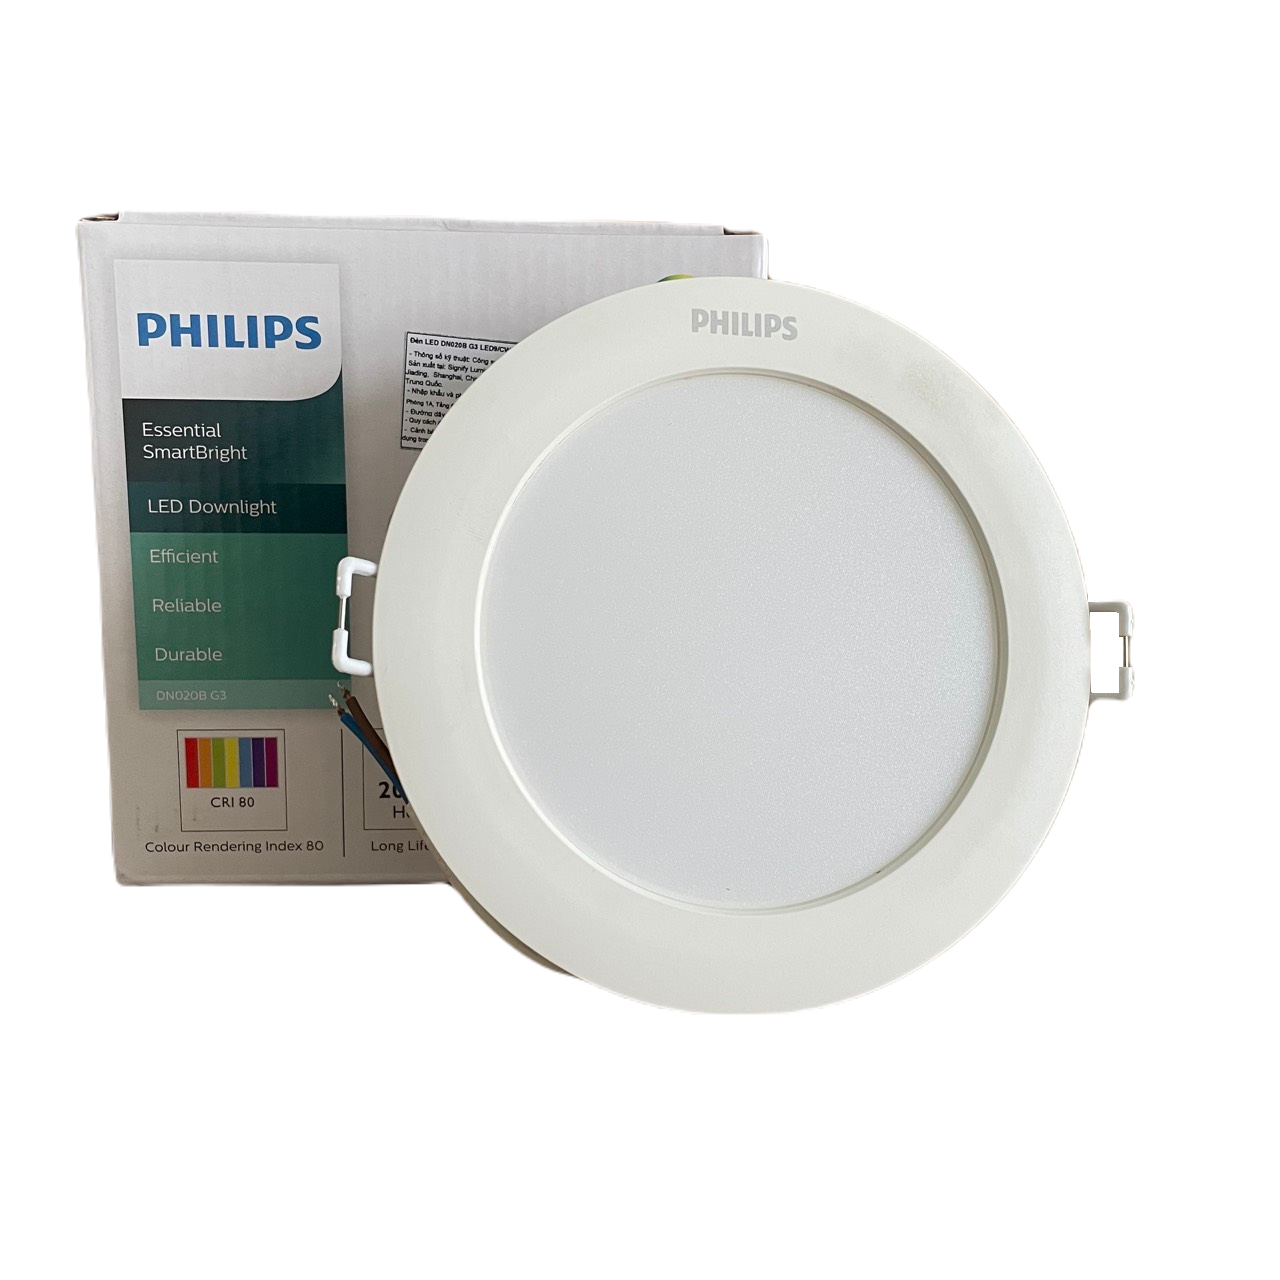 Đèn downlight âm trần LED Philips Essential SmartBright DN020B G3 LED20/WW 23W 220-240V D200 GM